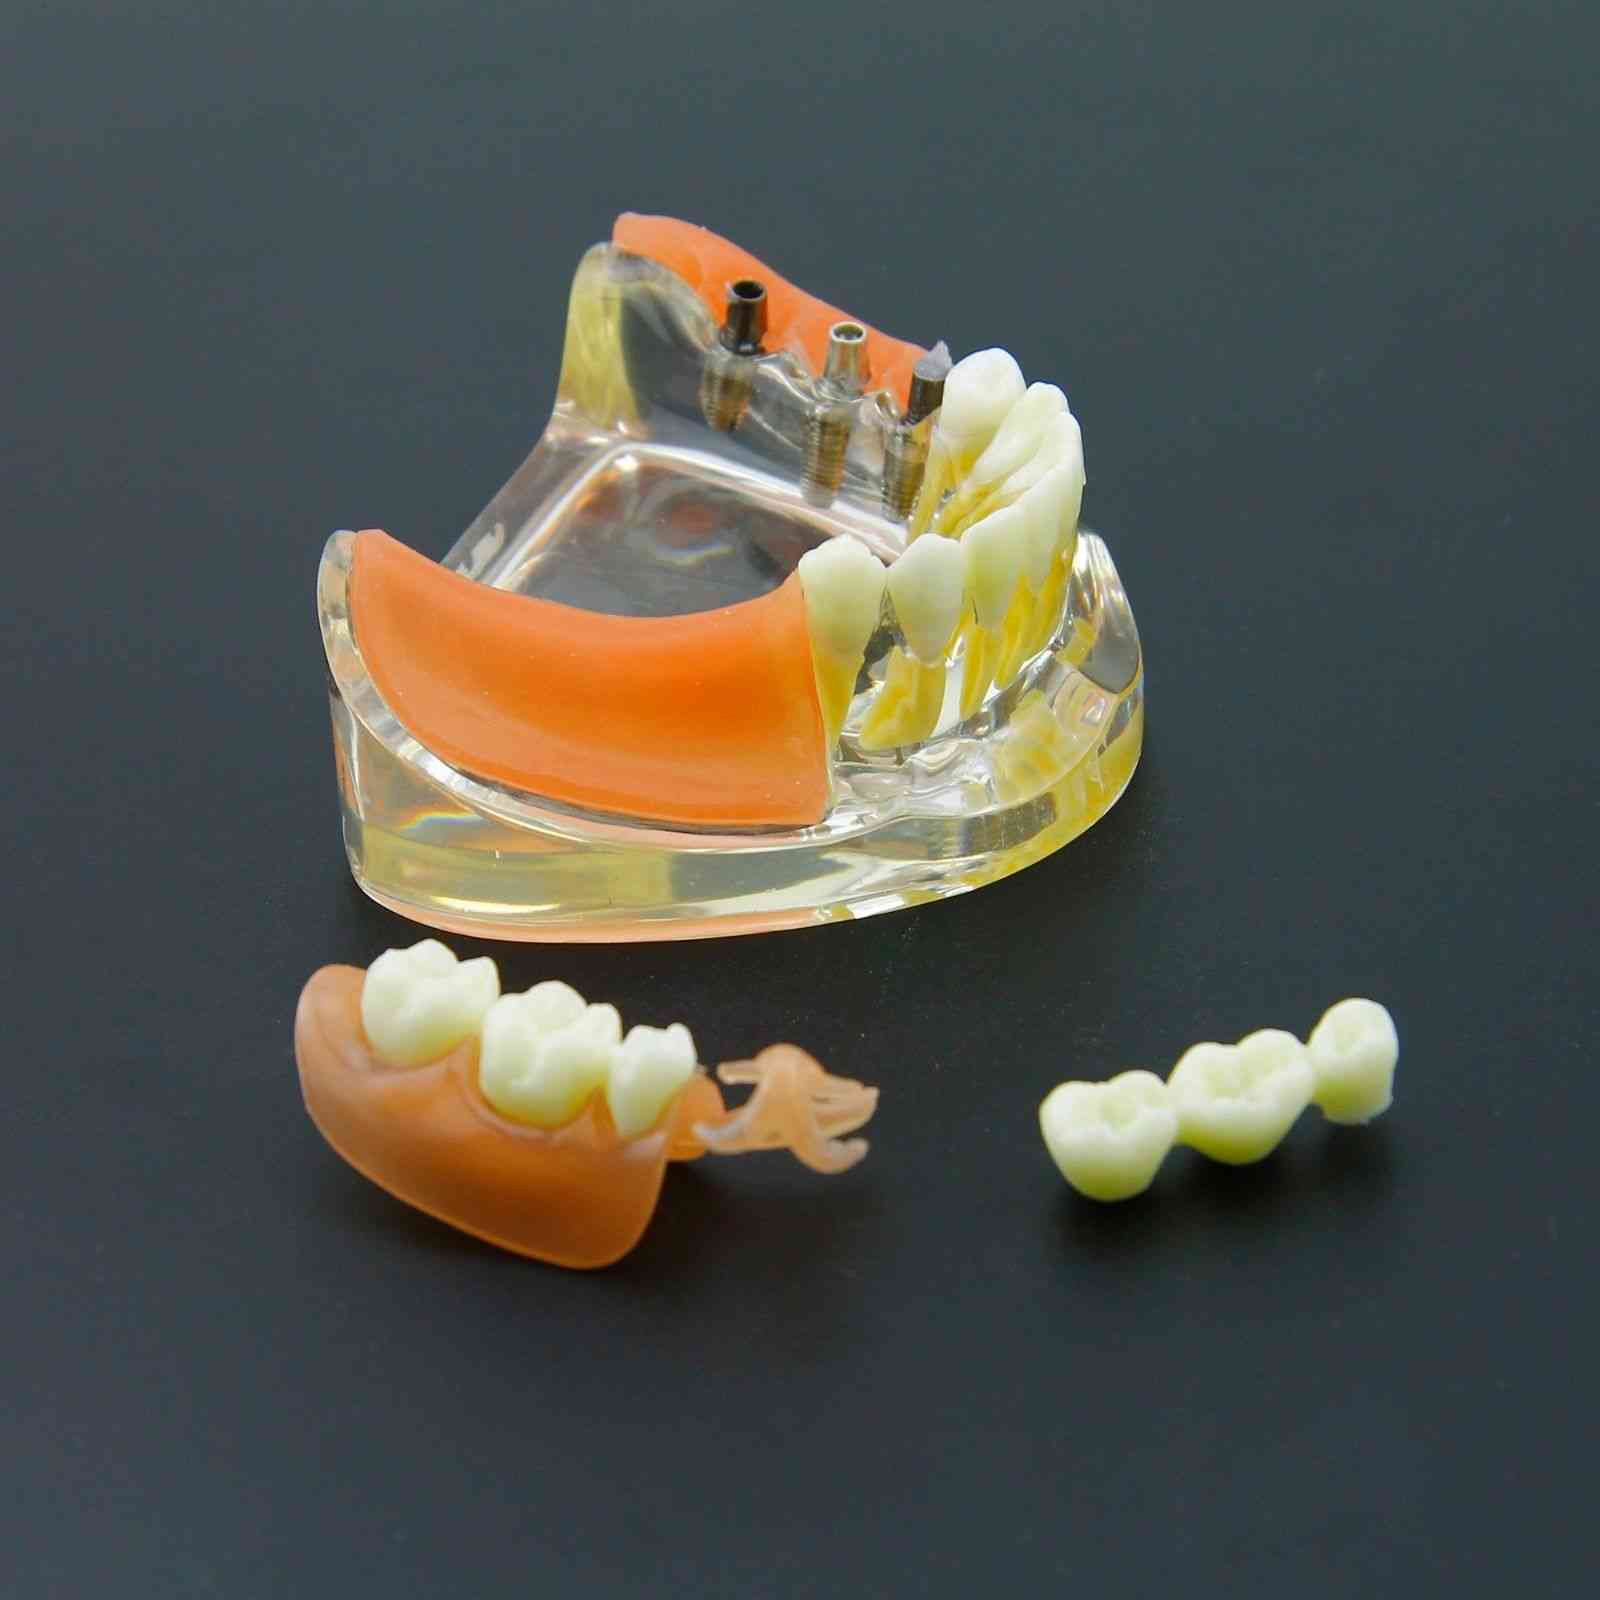 Zahnimplantat-Restaurationszähne Modell - Demo zur herausnehmbaren Brückenprothese